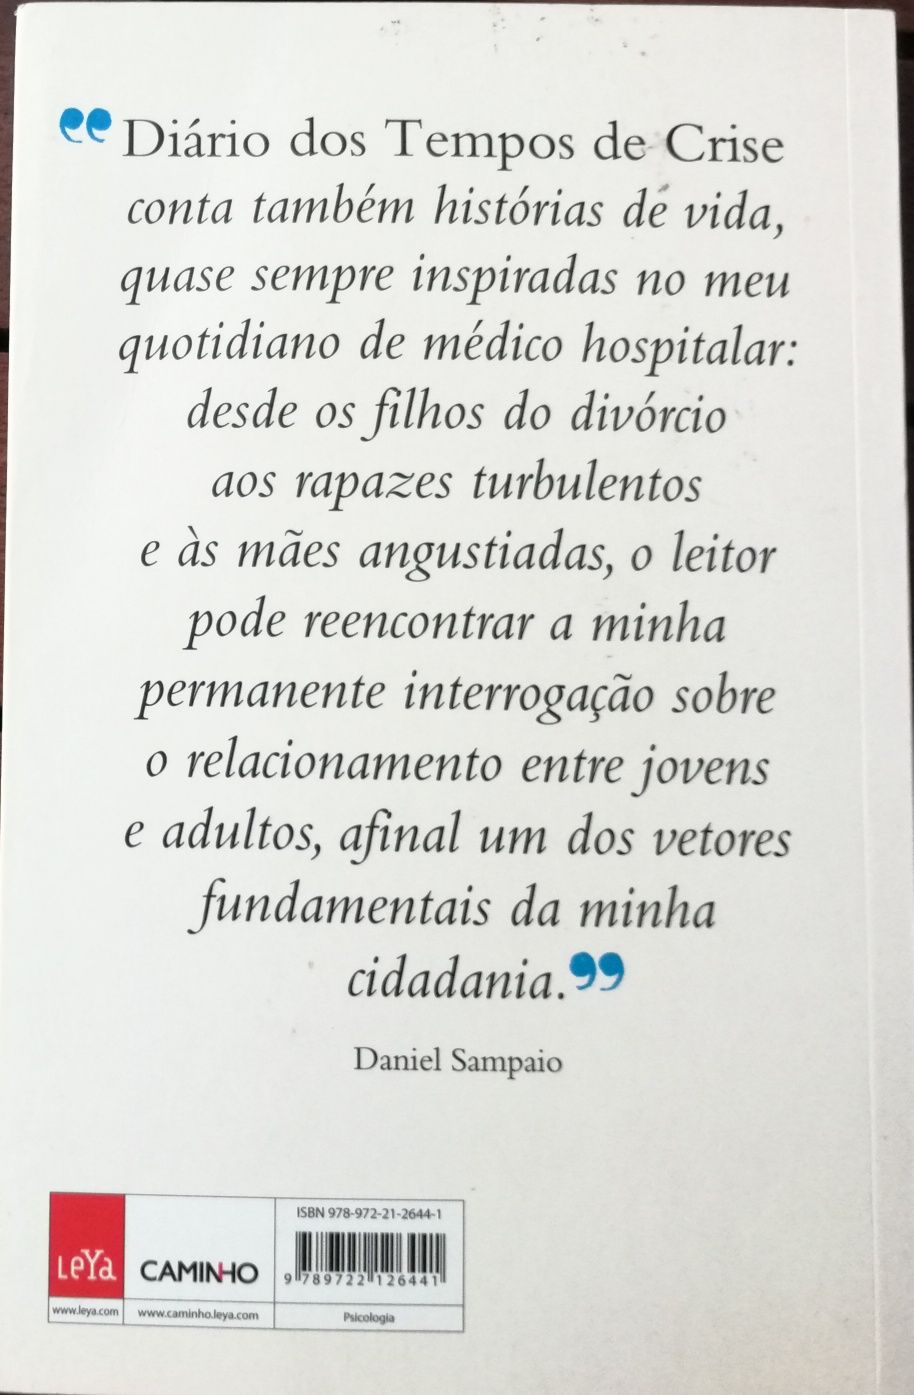 Livro "Diário dos Tempos de Crise", Daniel Sampaio